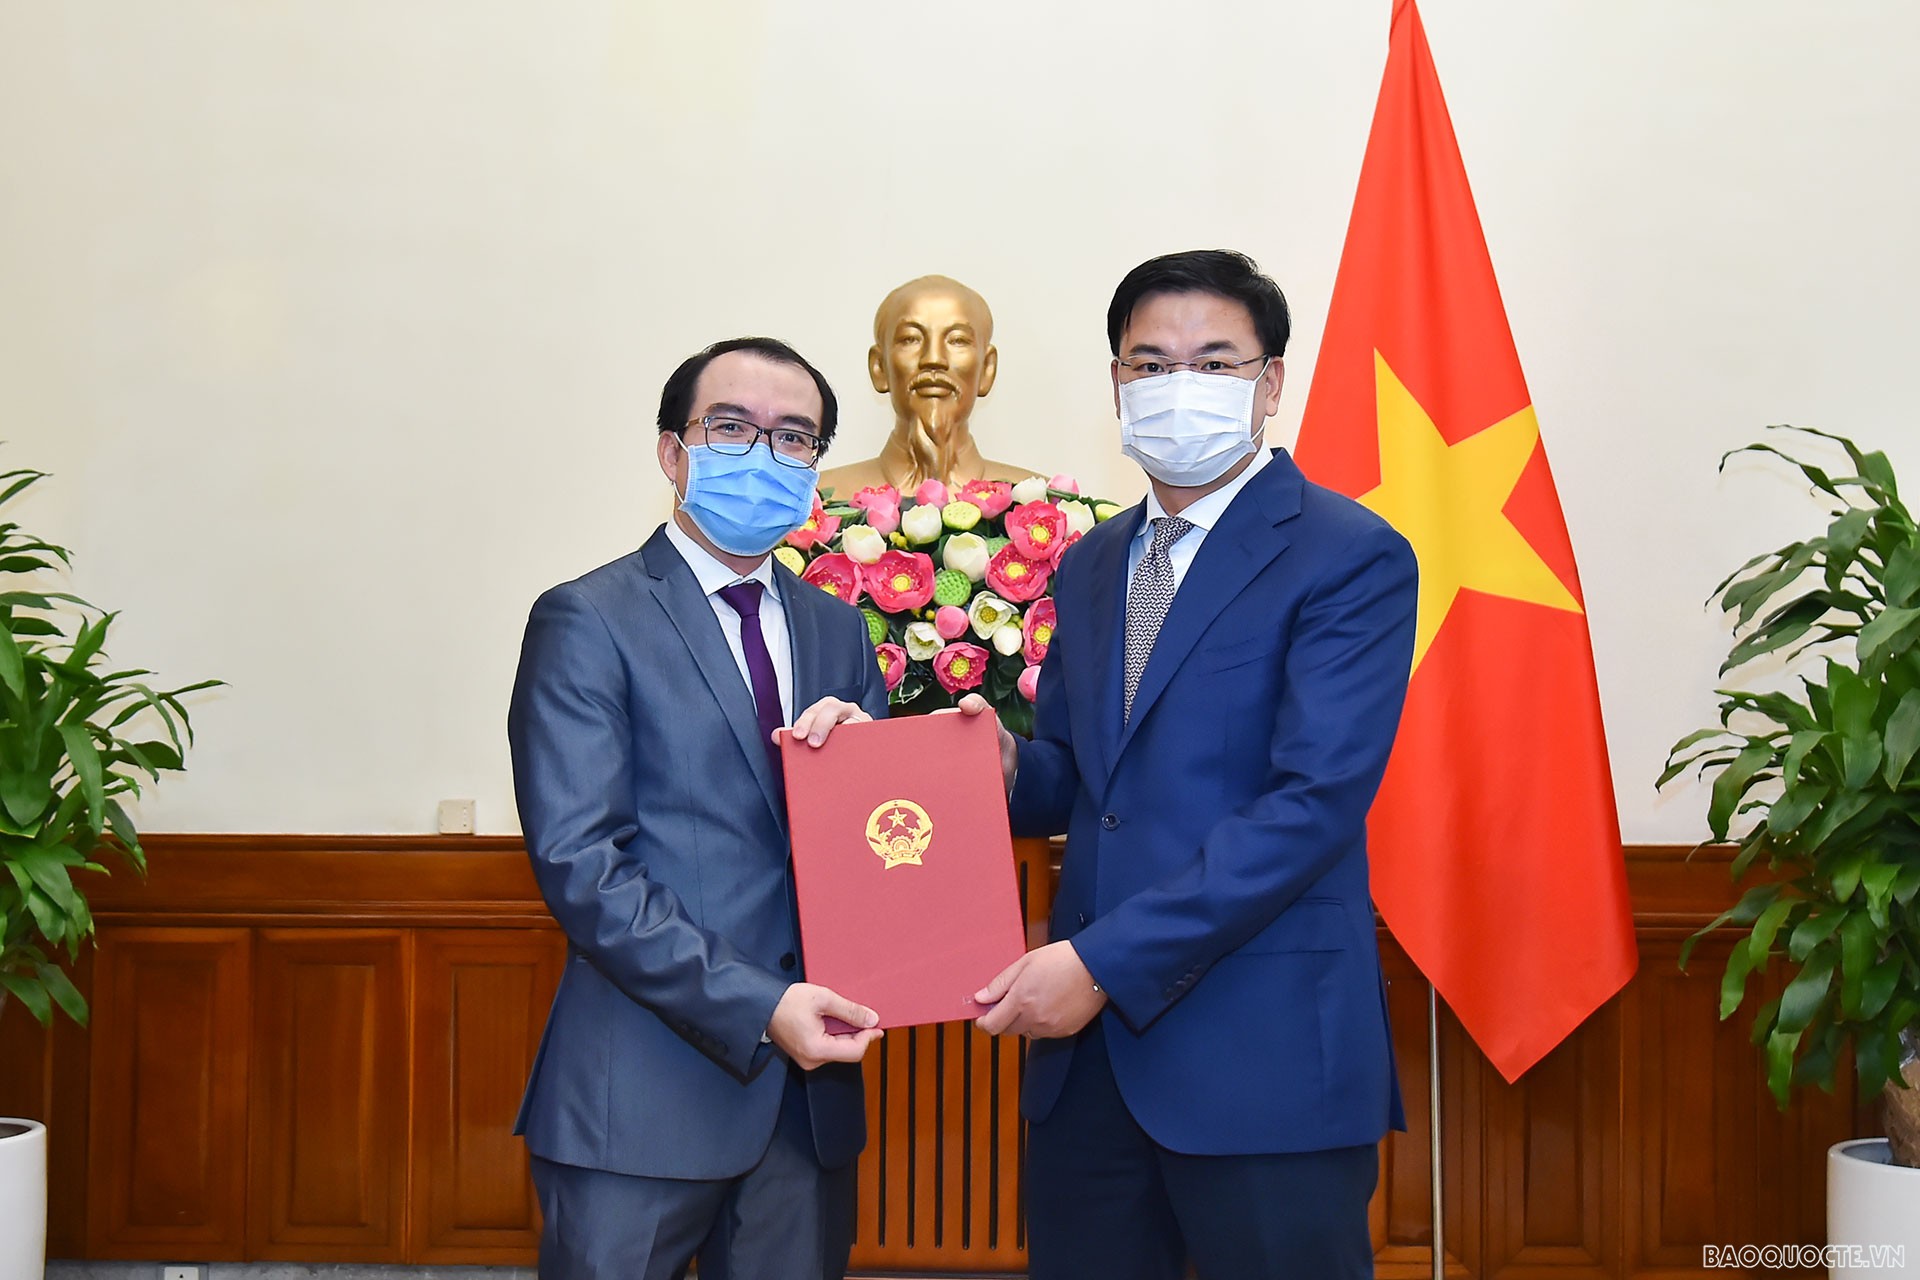 Thứ trưởng Ngoại giao Phạm Quang Hiệu đã trao quyết định bổ nhiệm ông Lê Đức Thiện, Tập sự Phó Vụ trưởng, Vụ Tổ chức Cán bộ, giữ chức Phó Vụ trưởng, Vụ Tổ chức Cán bộ.